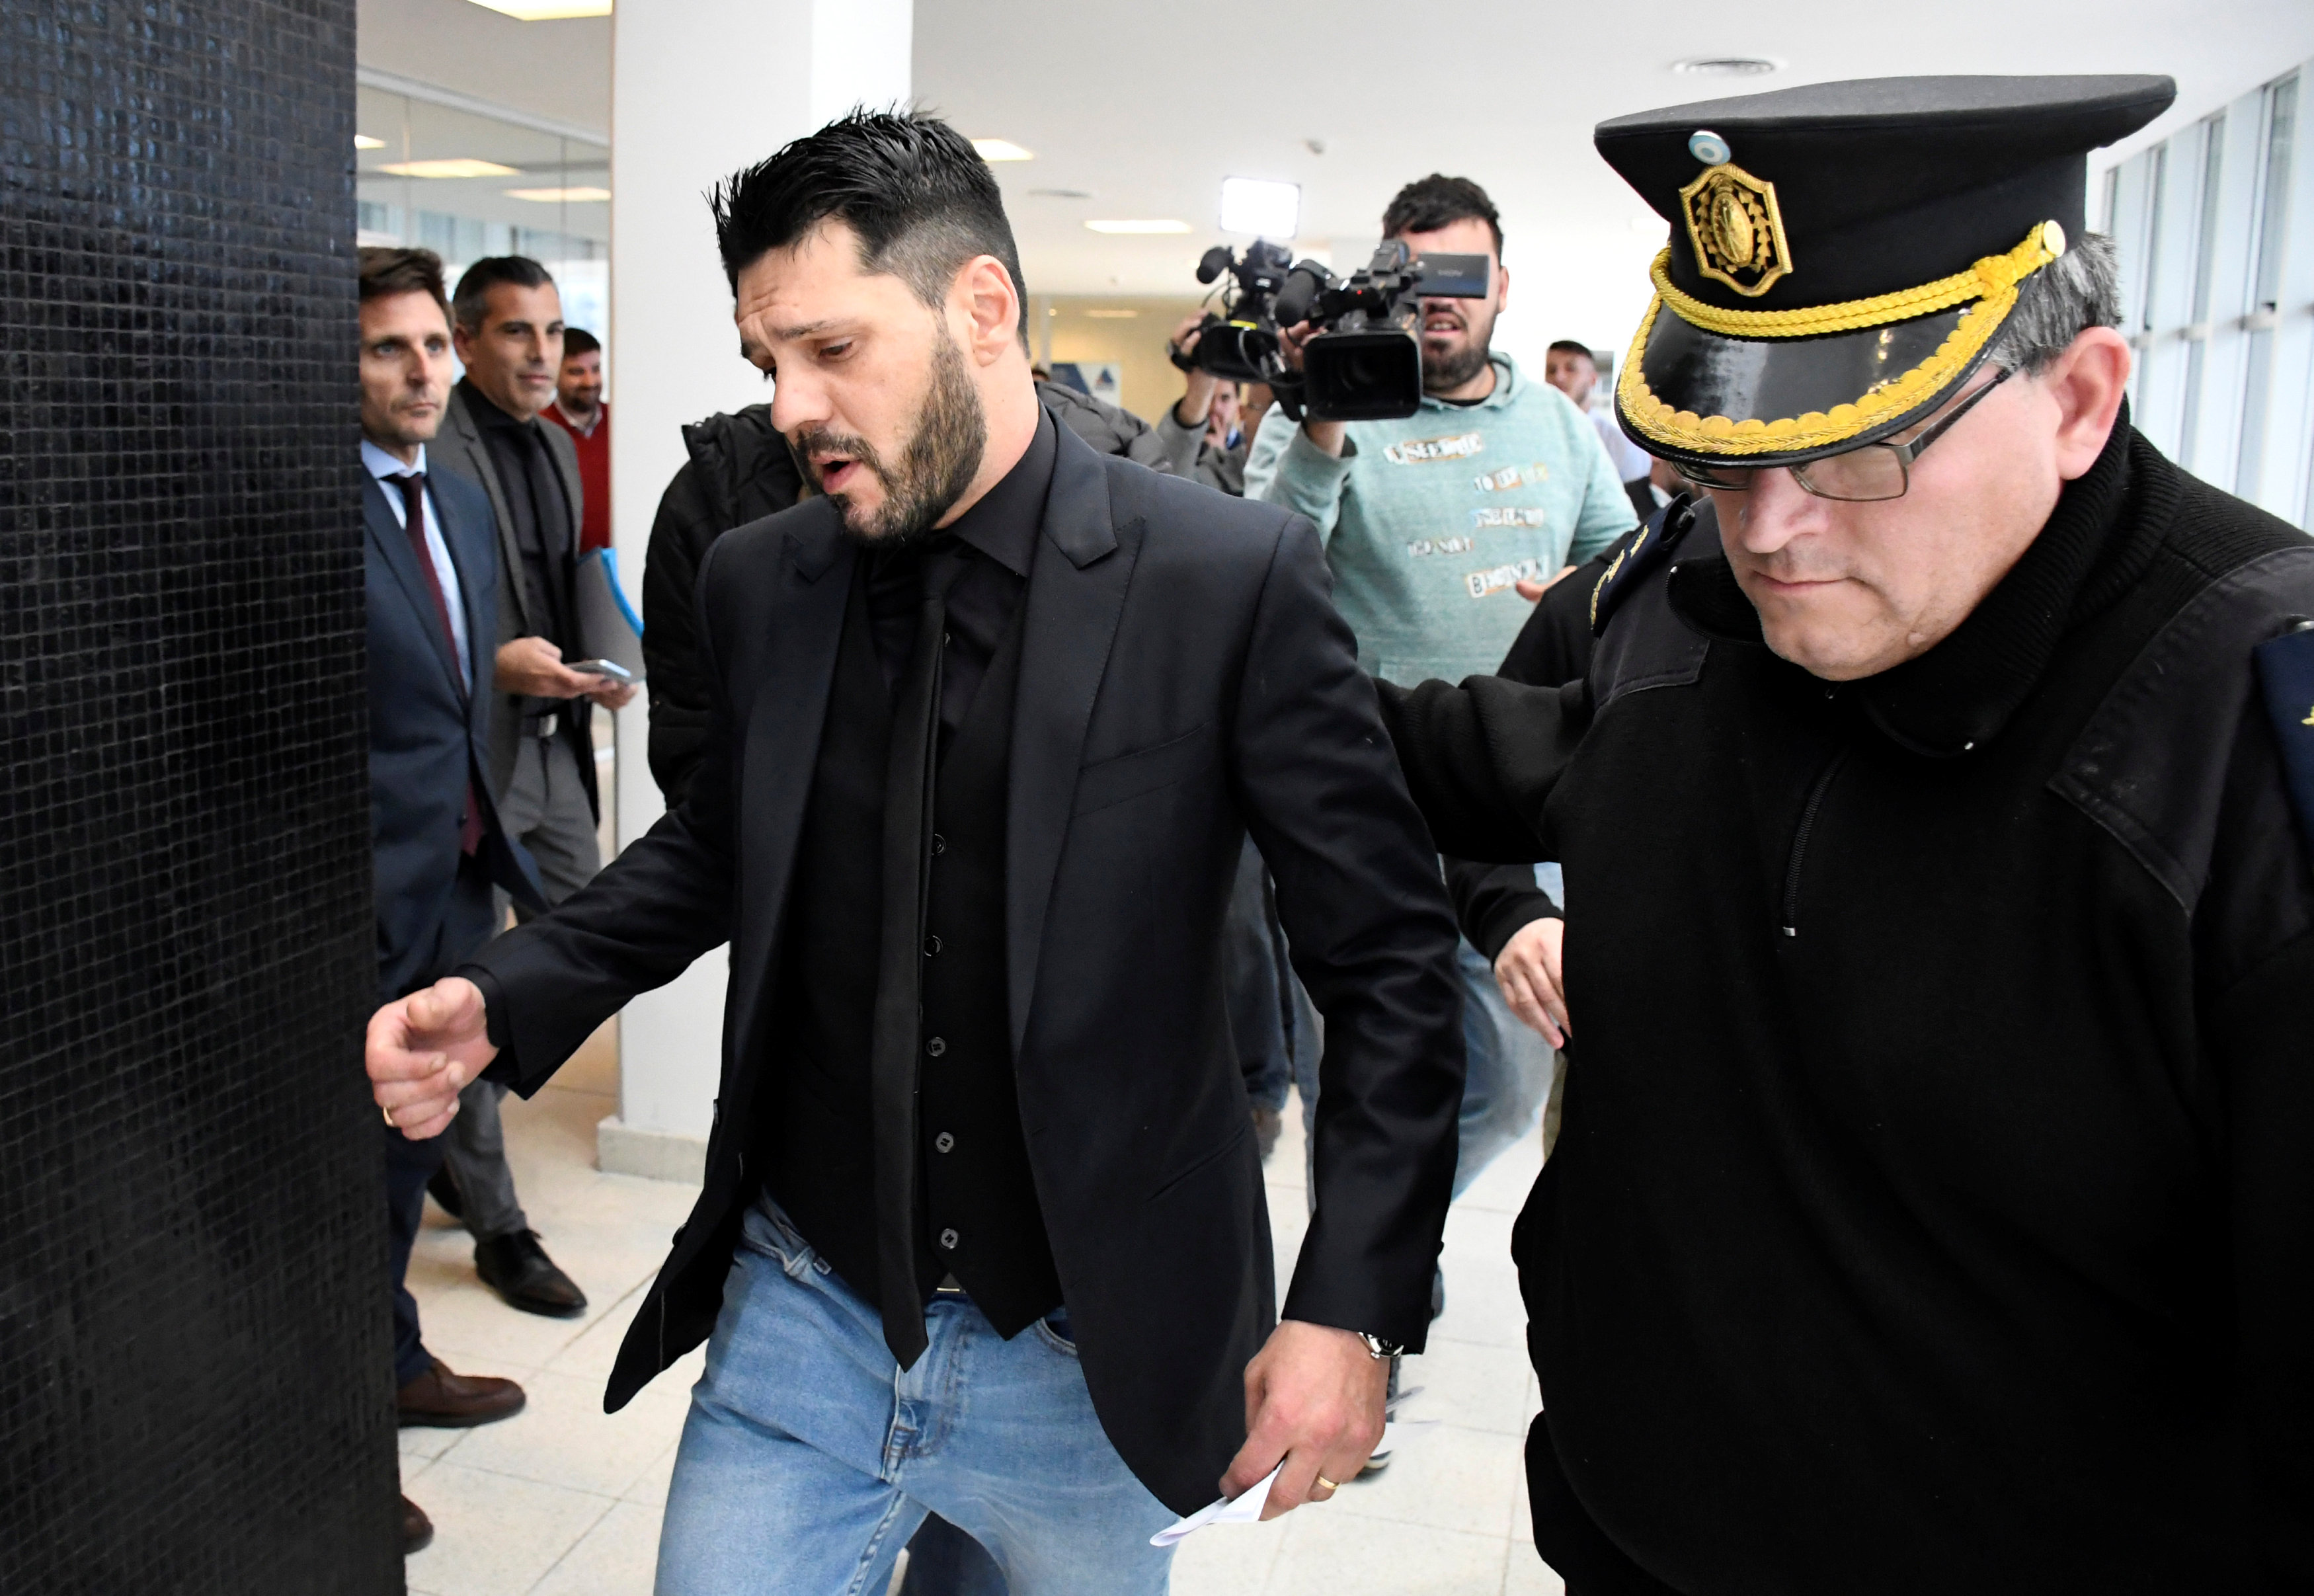 Hermano de Messi condenado a prisión por portación ilegal de arma